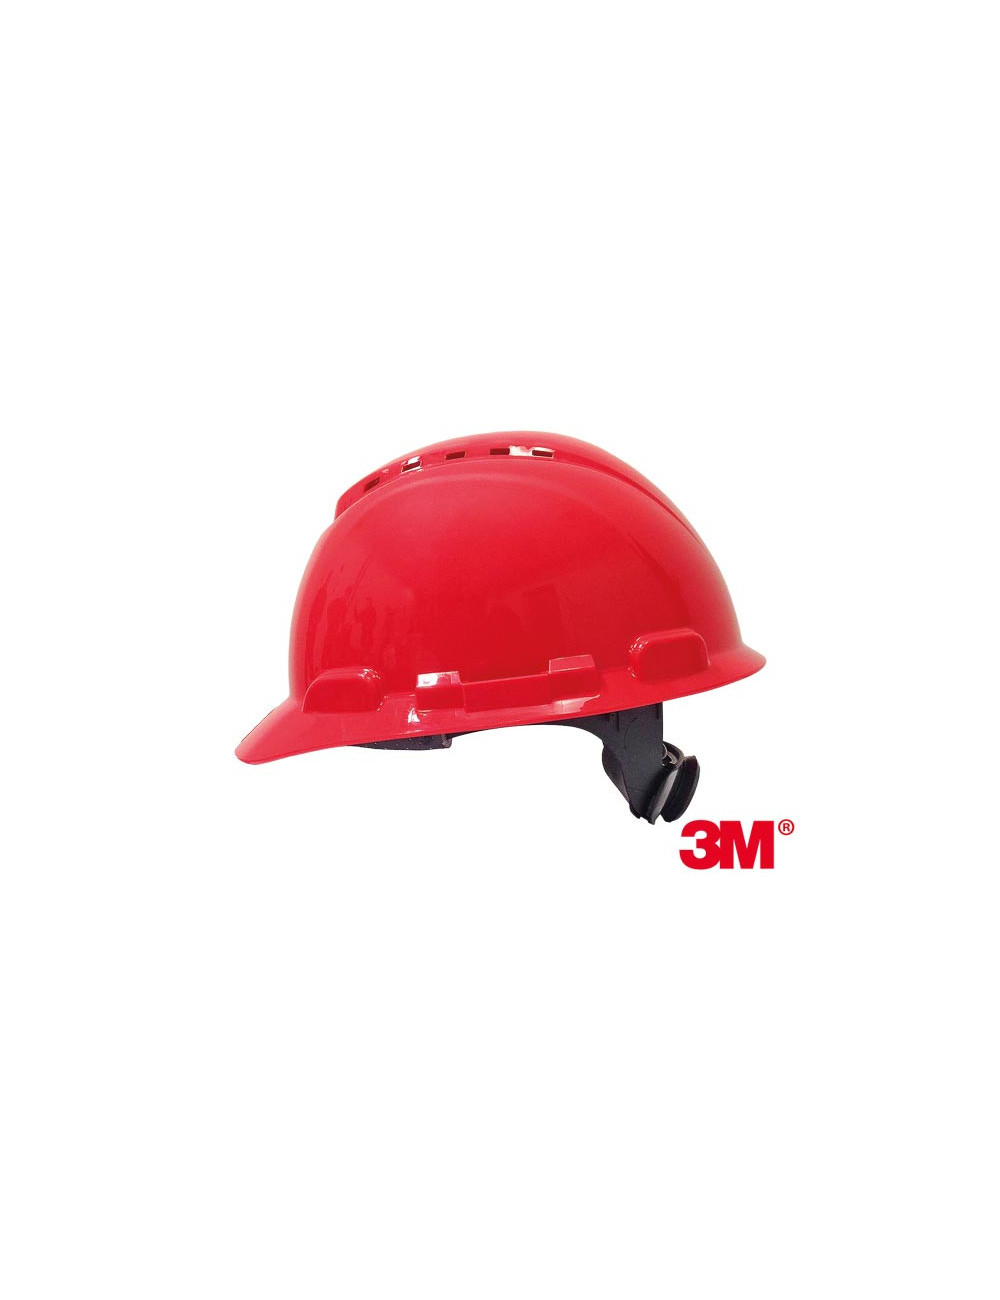 Protective helmet c red 3M 3m-kas-h700n